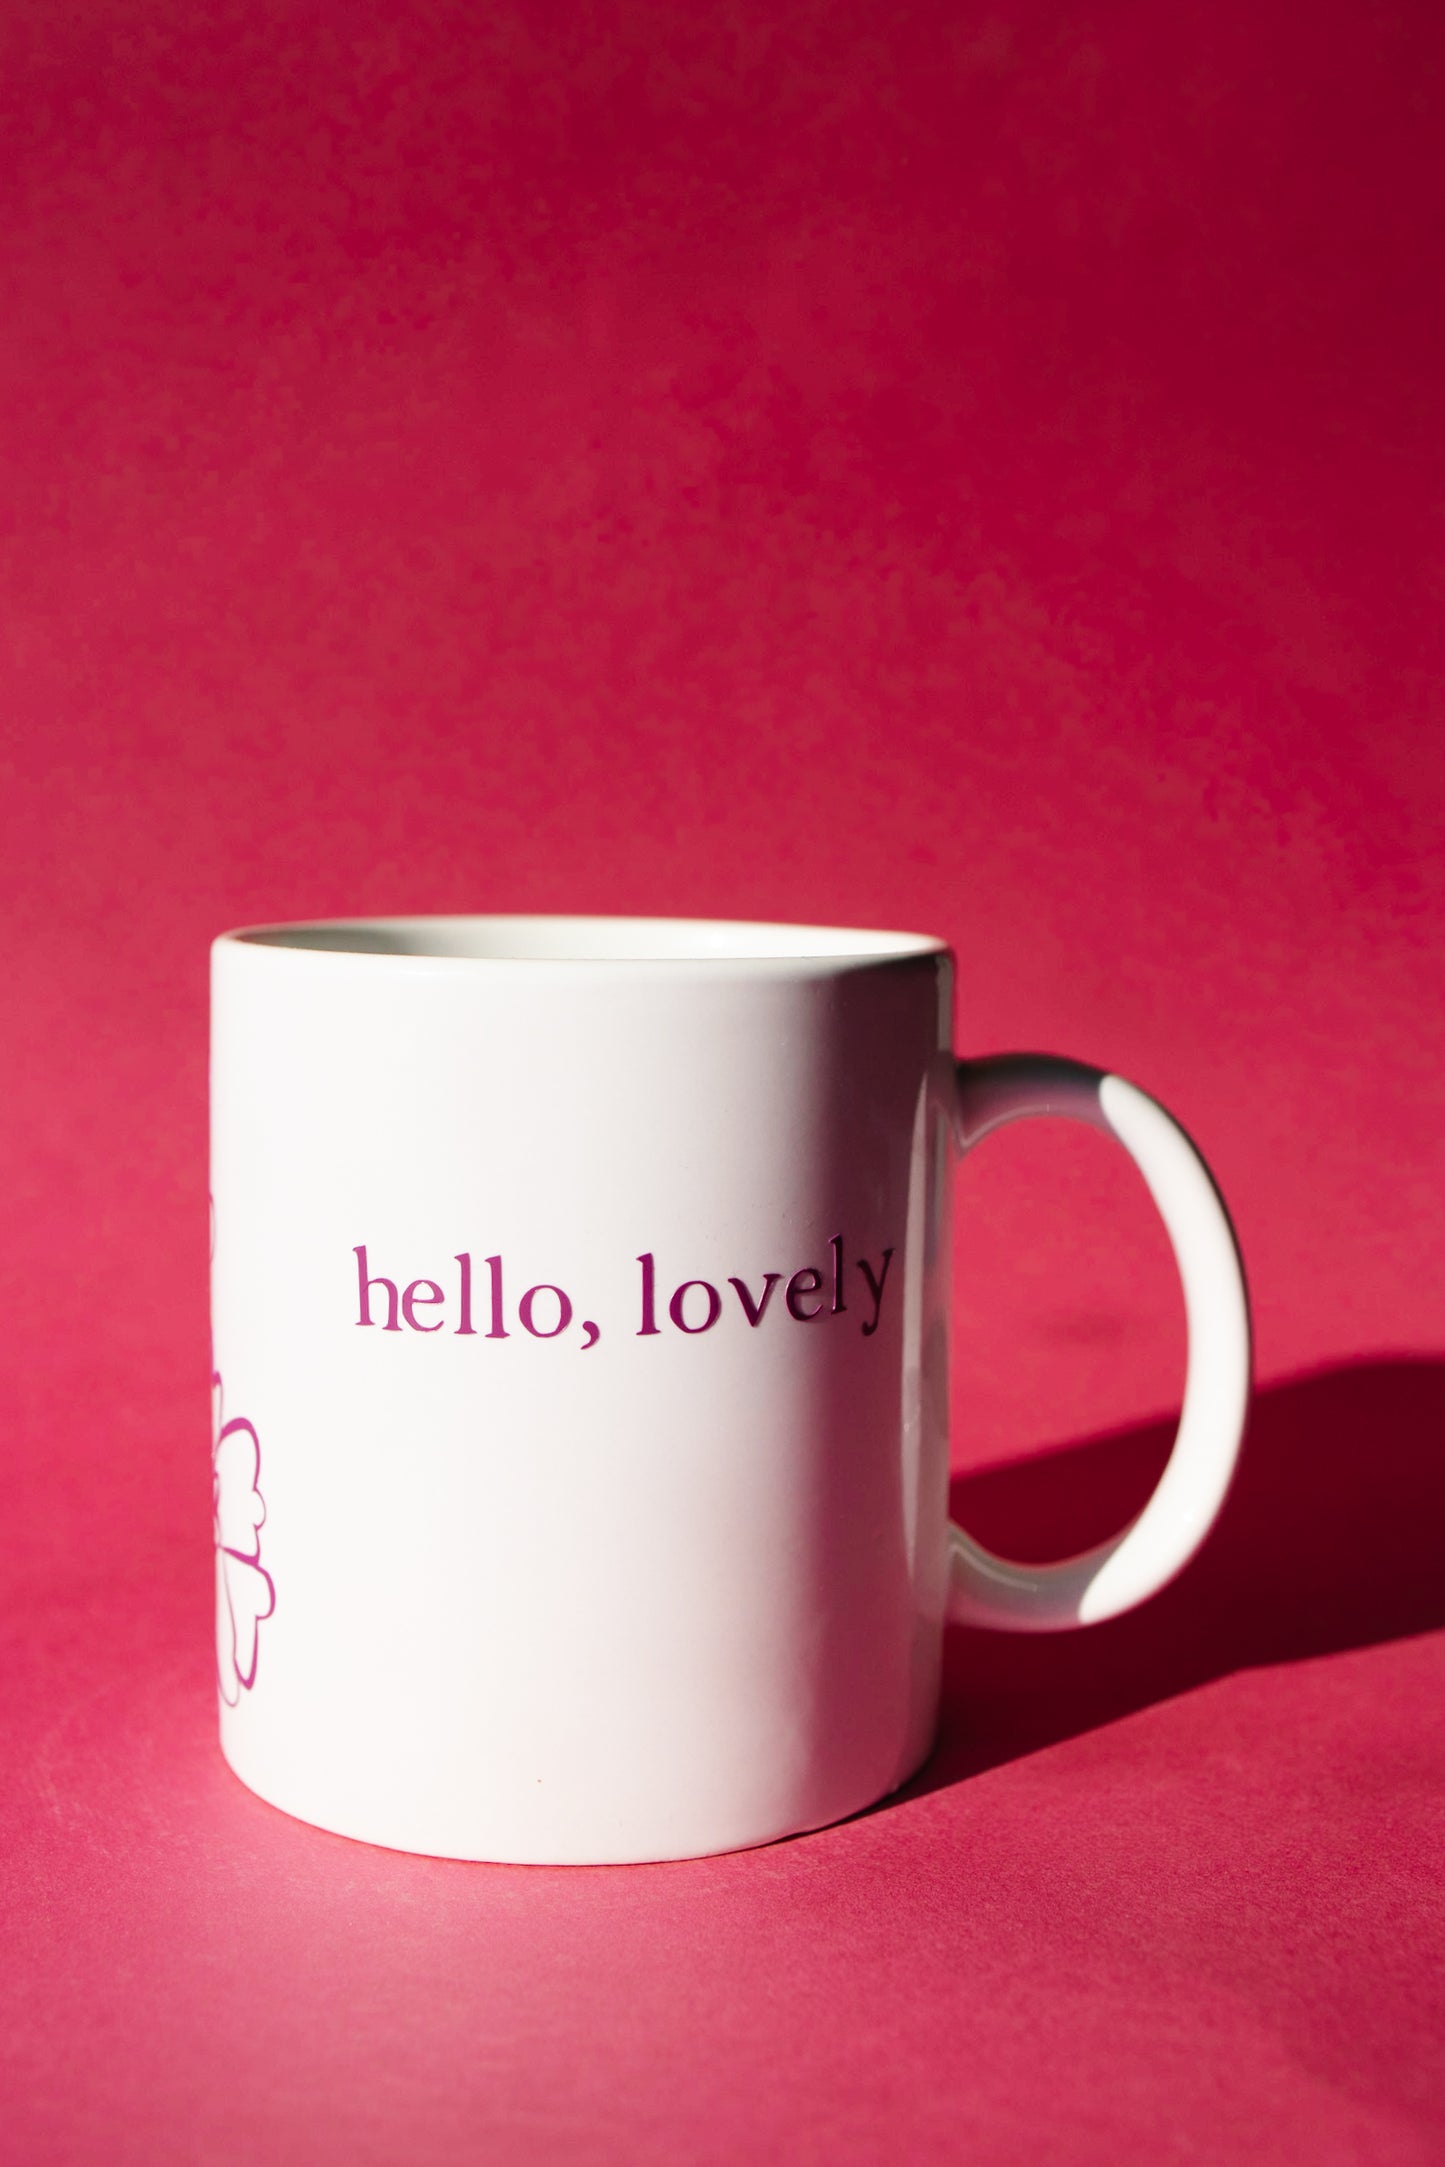 Hello, lovely mug